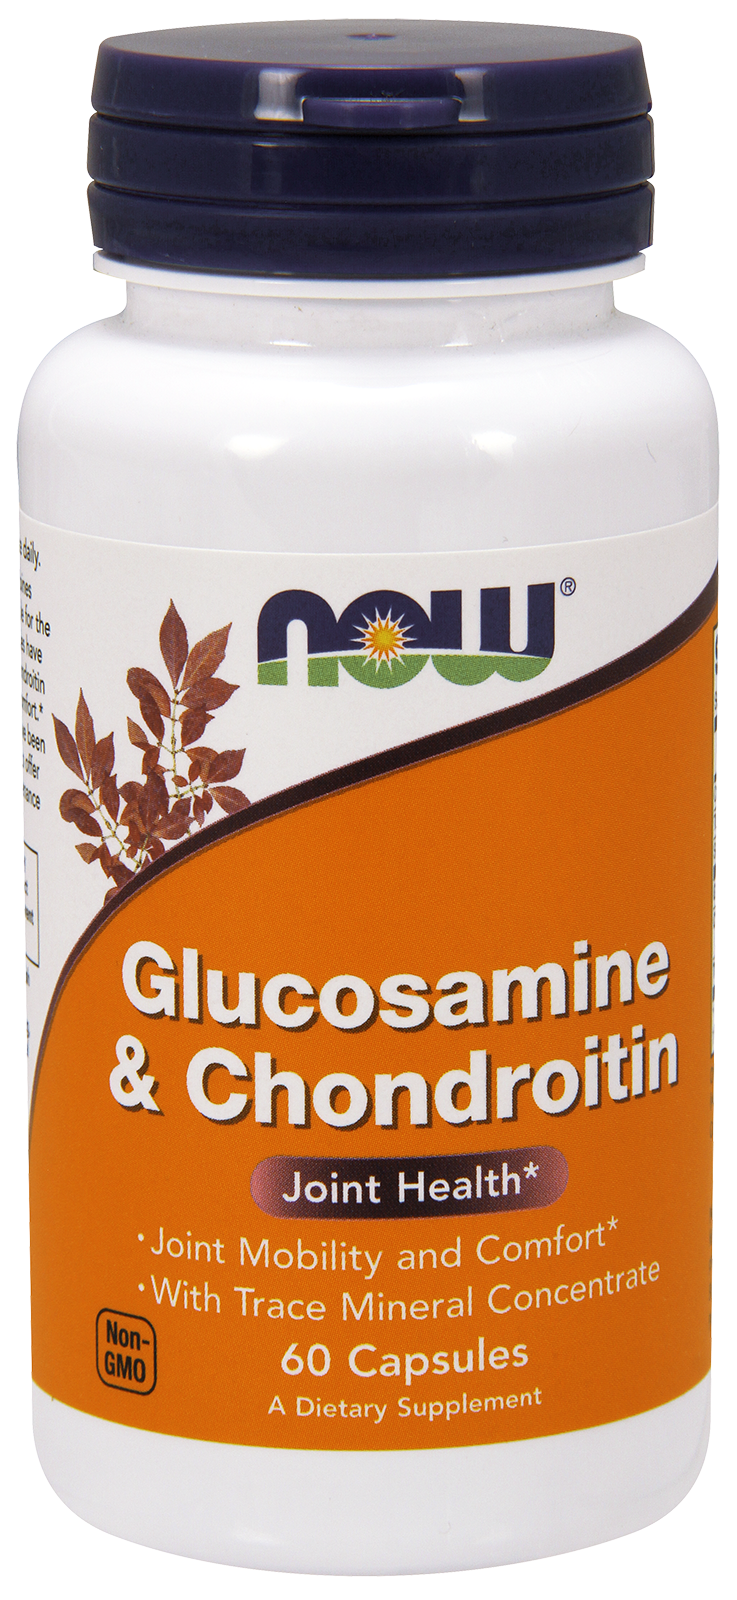 Glucosamine & Chondroitin - 60 Capsules